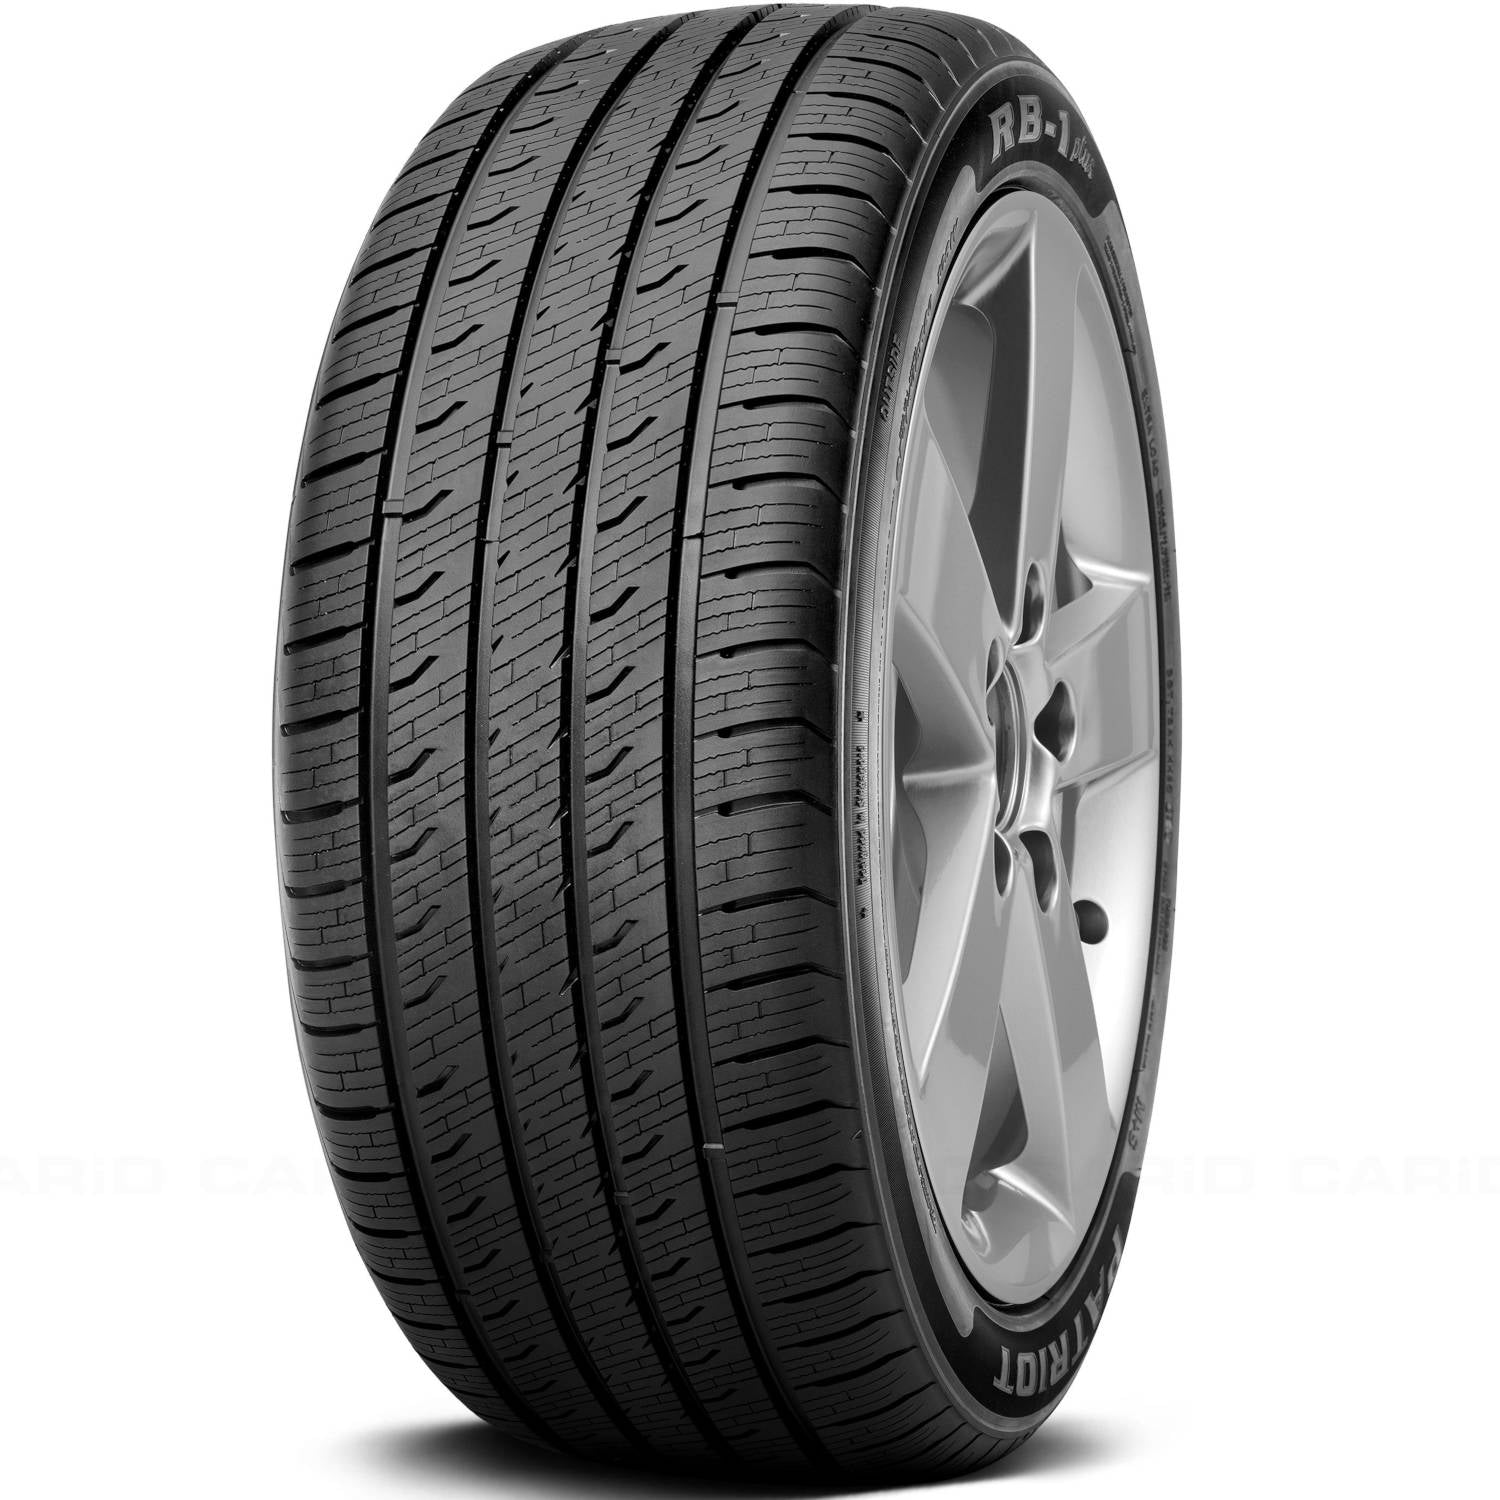 PATRIOT RB-1 PLUS 245/45ZR18 (26.7X9.7R 18) Tires